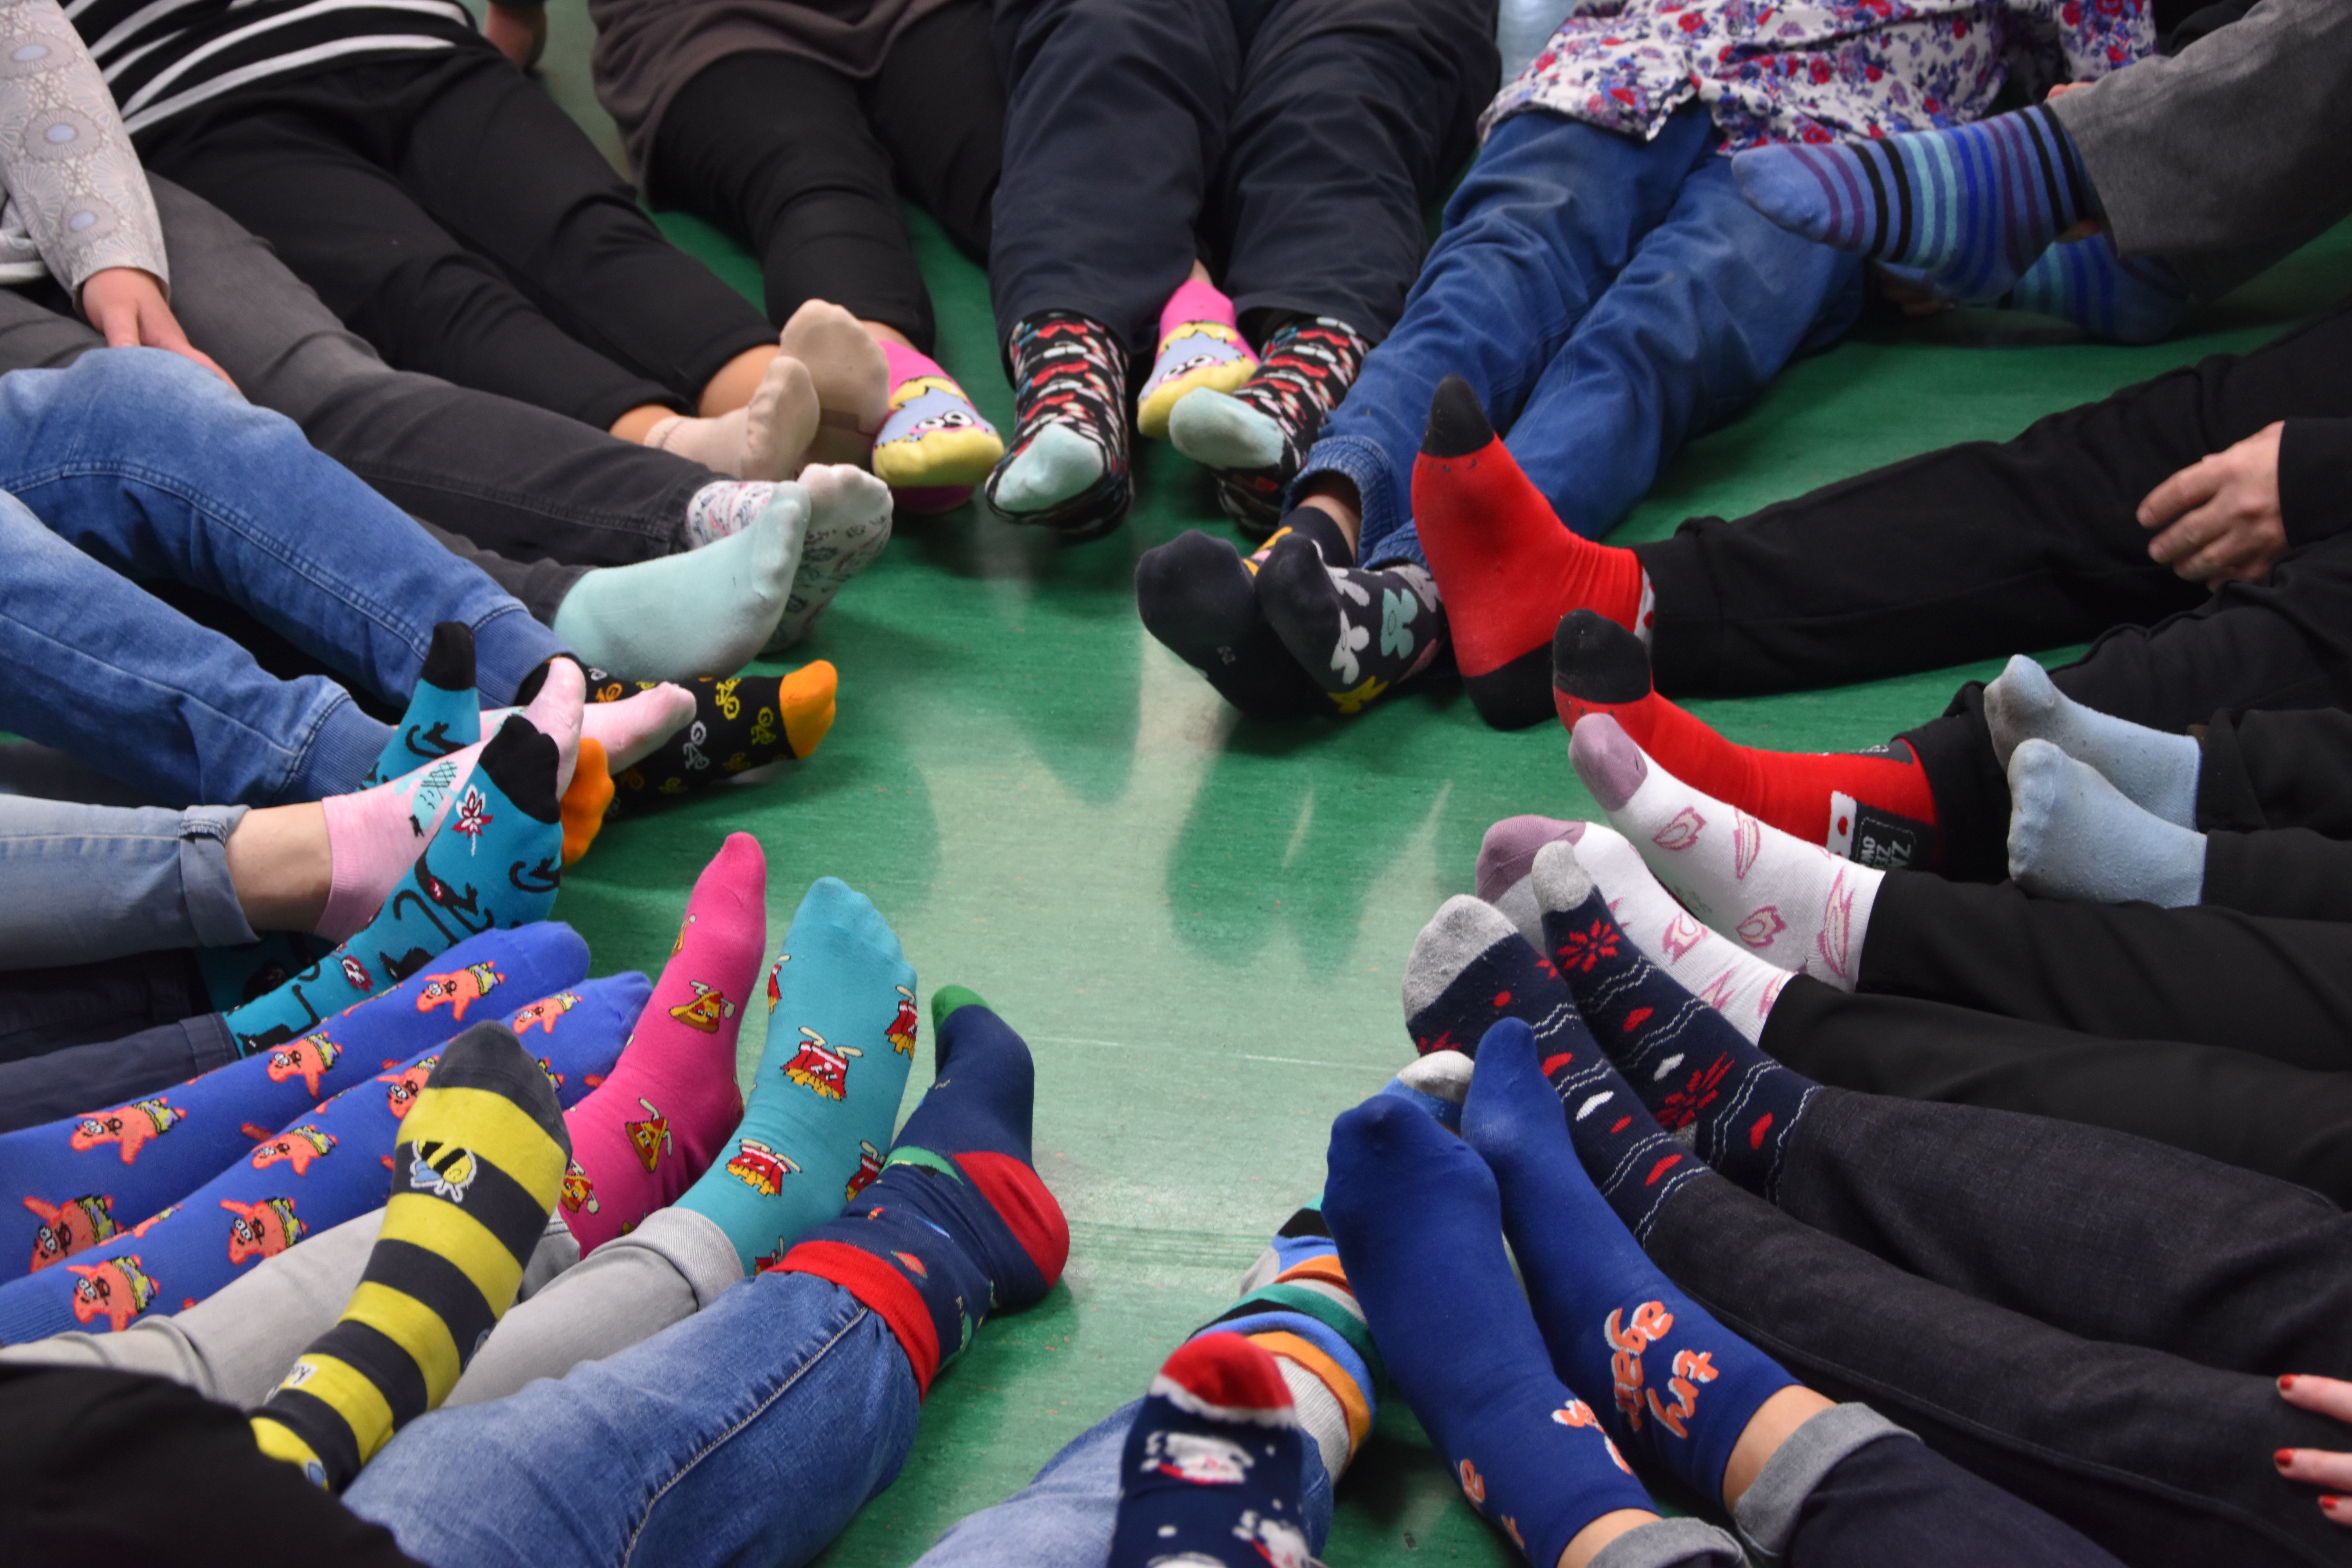 Zdjęcie przedstawia stopy w różnokolorowych skarpetkach na Światowy Dzień Zespołu Downa